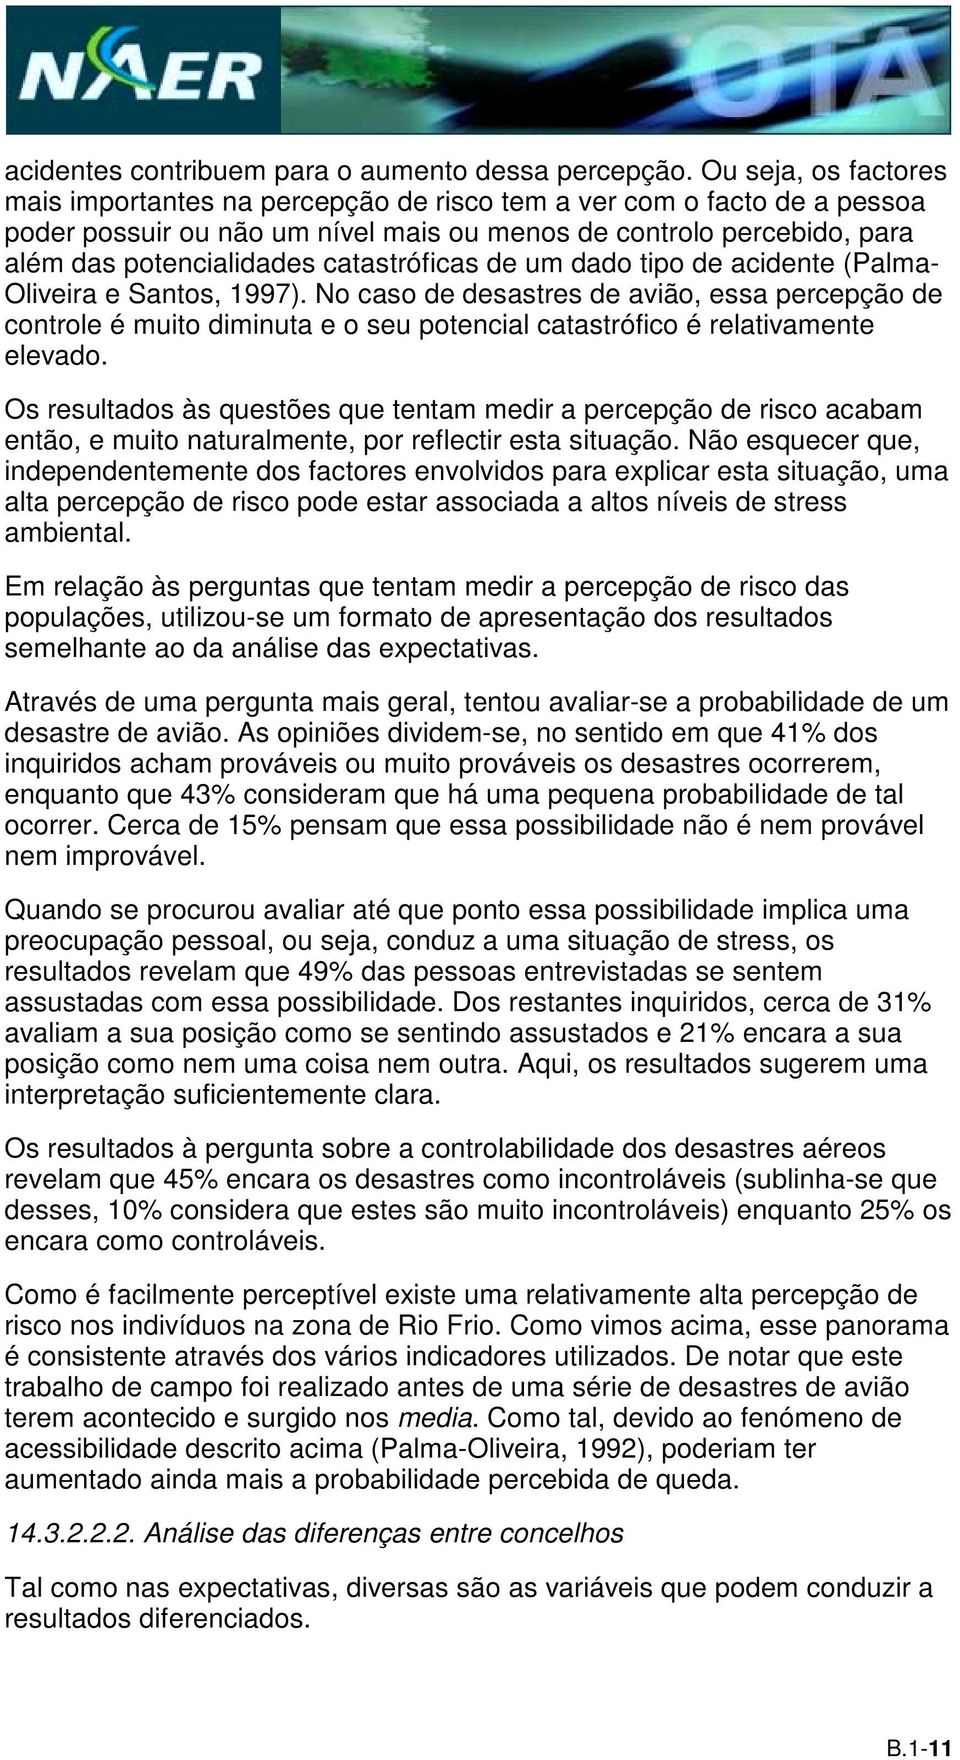 catastróficas de um dado tipo de acidente (Palma- Oliveira e Santos, 1997).